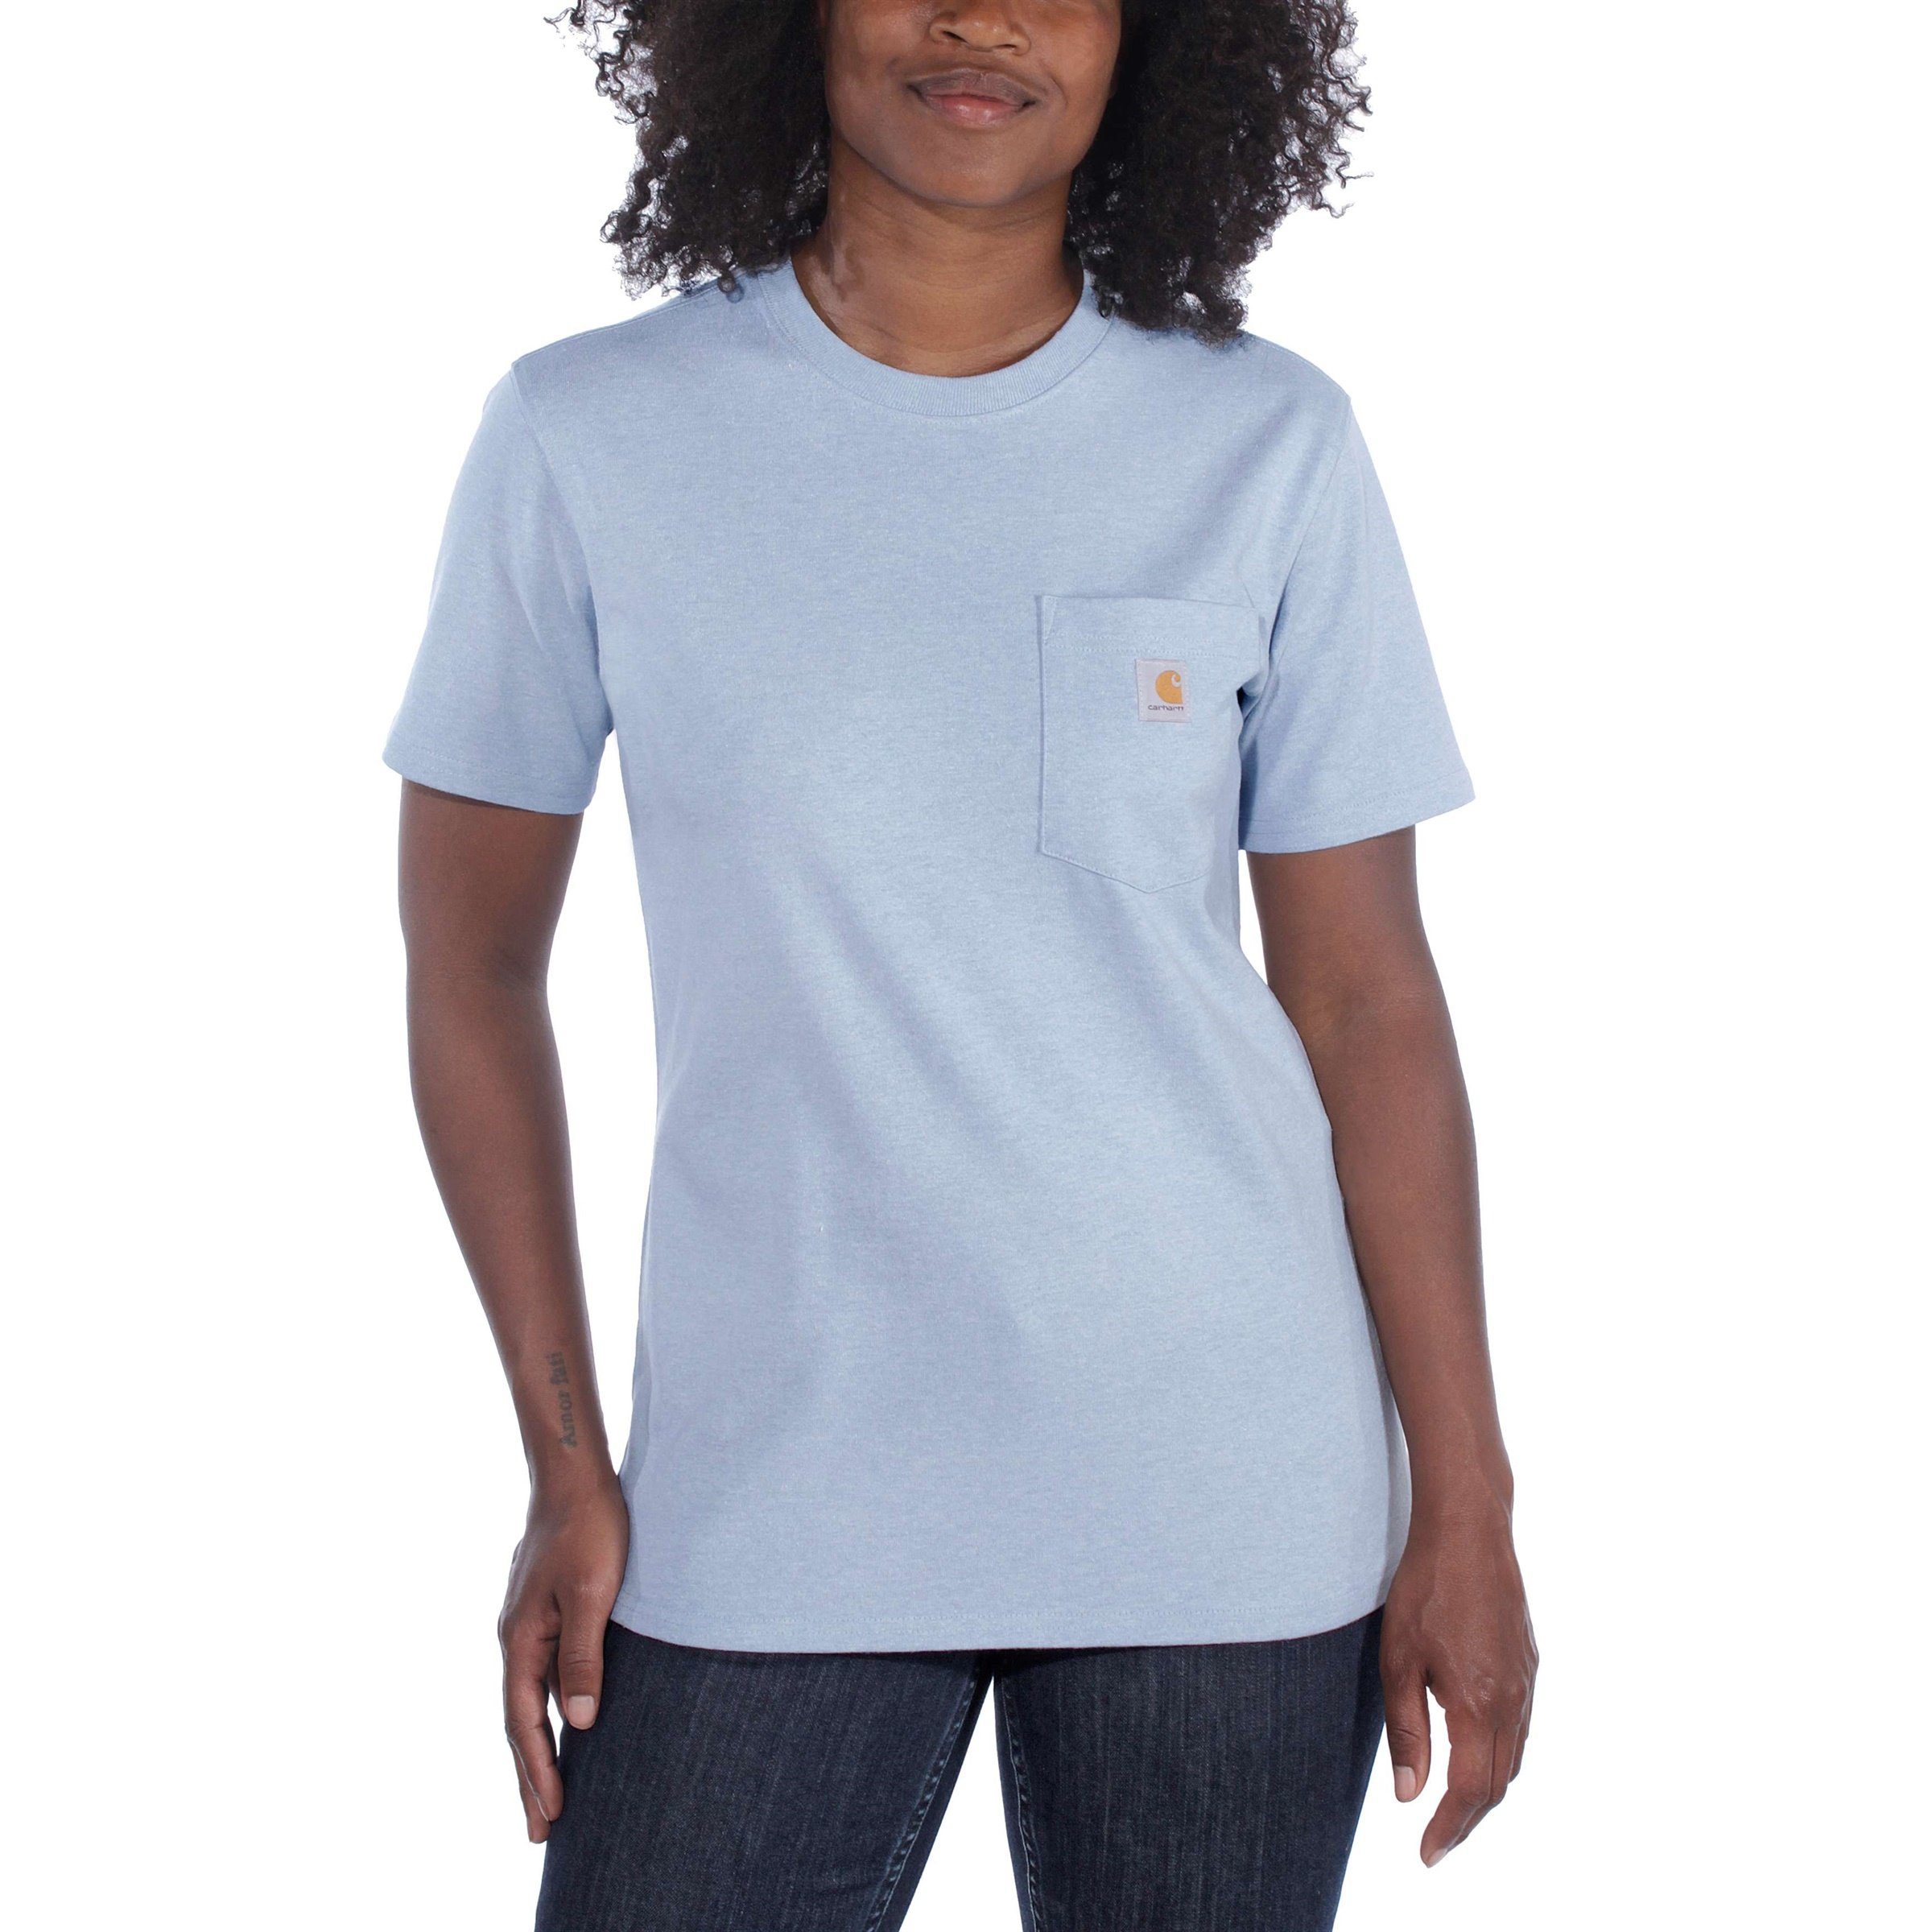 Adult T-Shirt Pocket Fit Carhartt Carhartt white T-Shirt Loose Heavyweight Short-Sleeve Damen